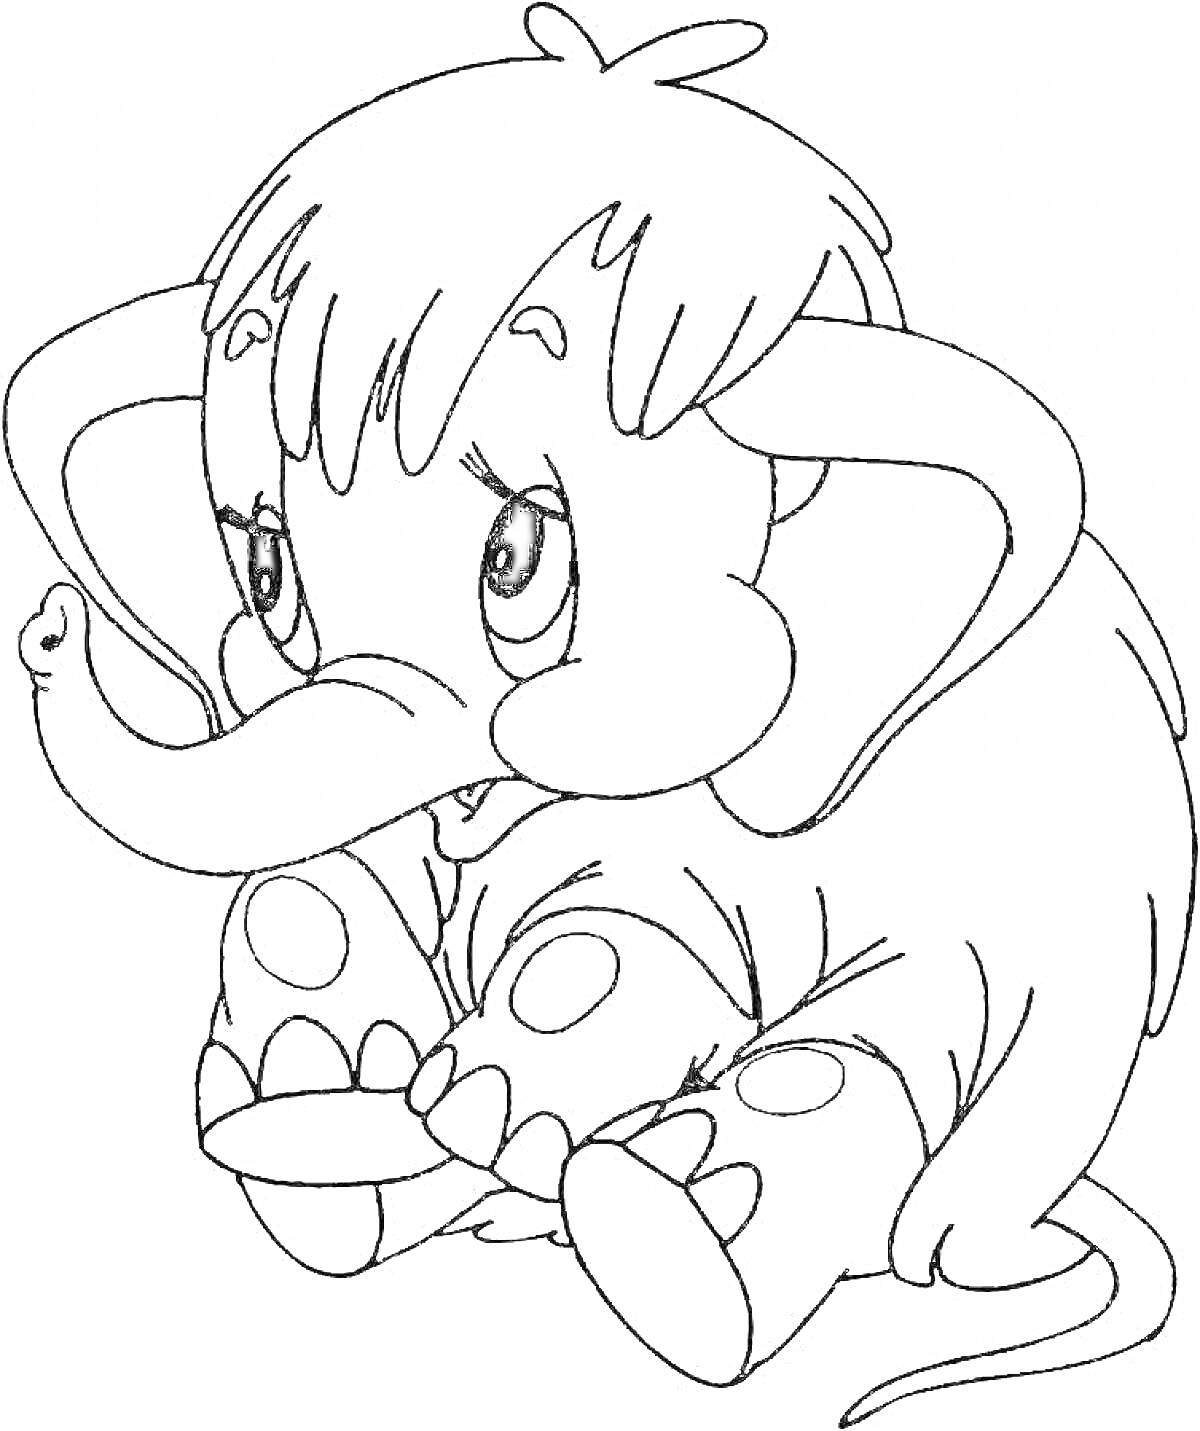 Раскраска малыш мамонт с большими ушами и хоботом, сидящий на полу